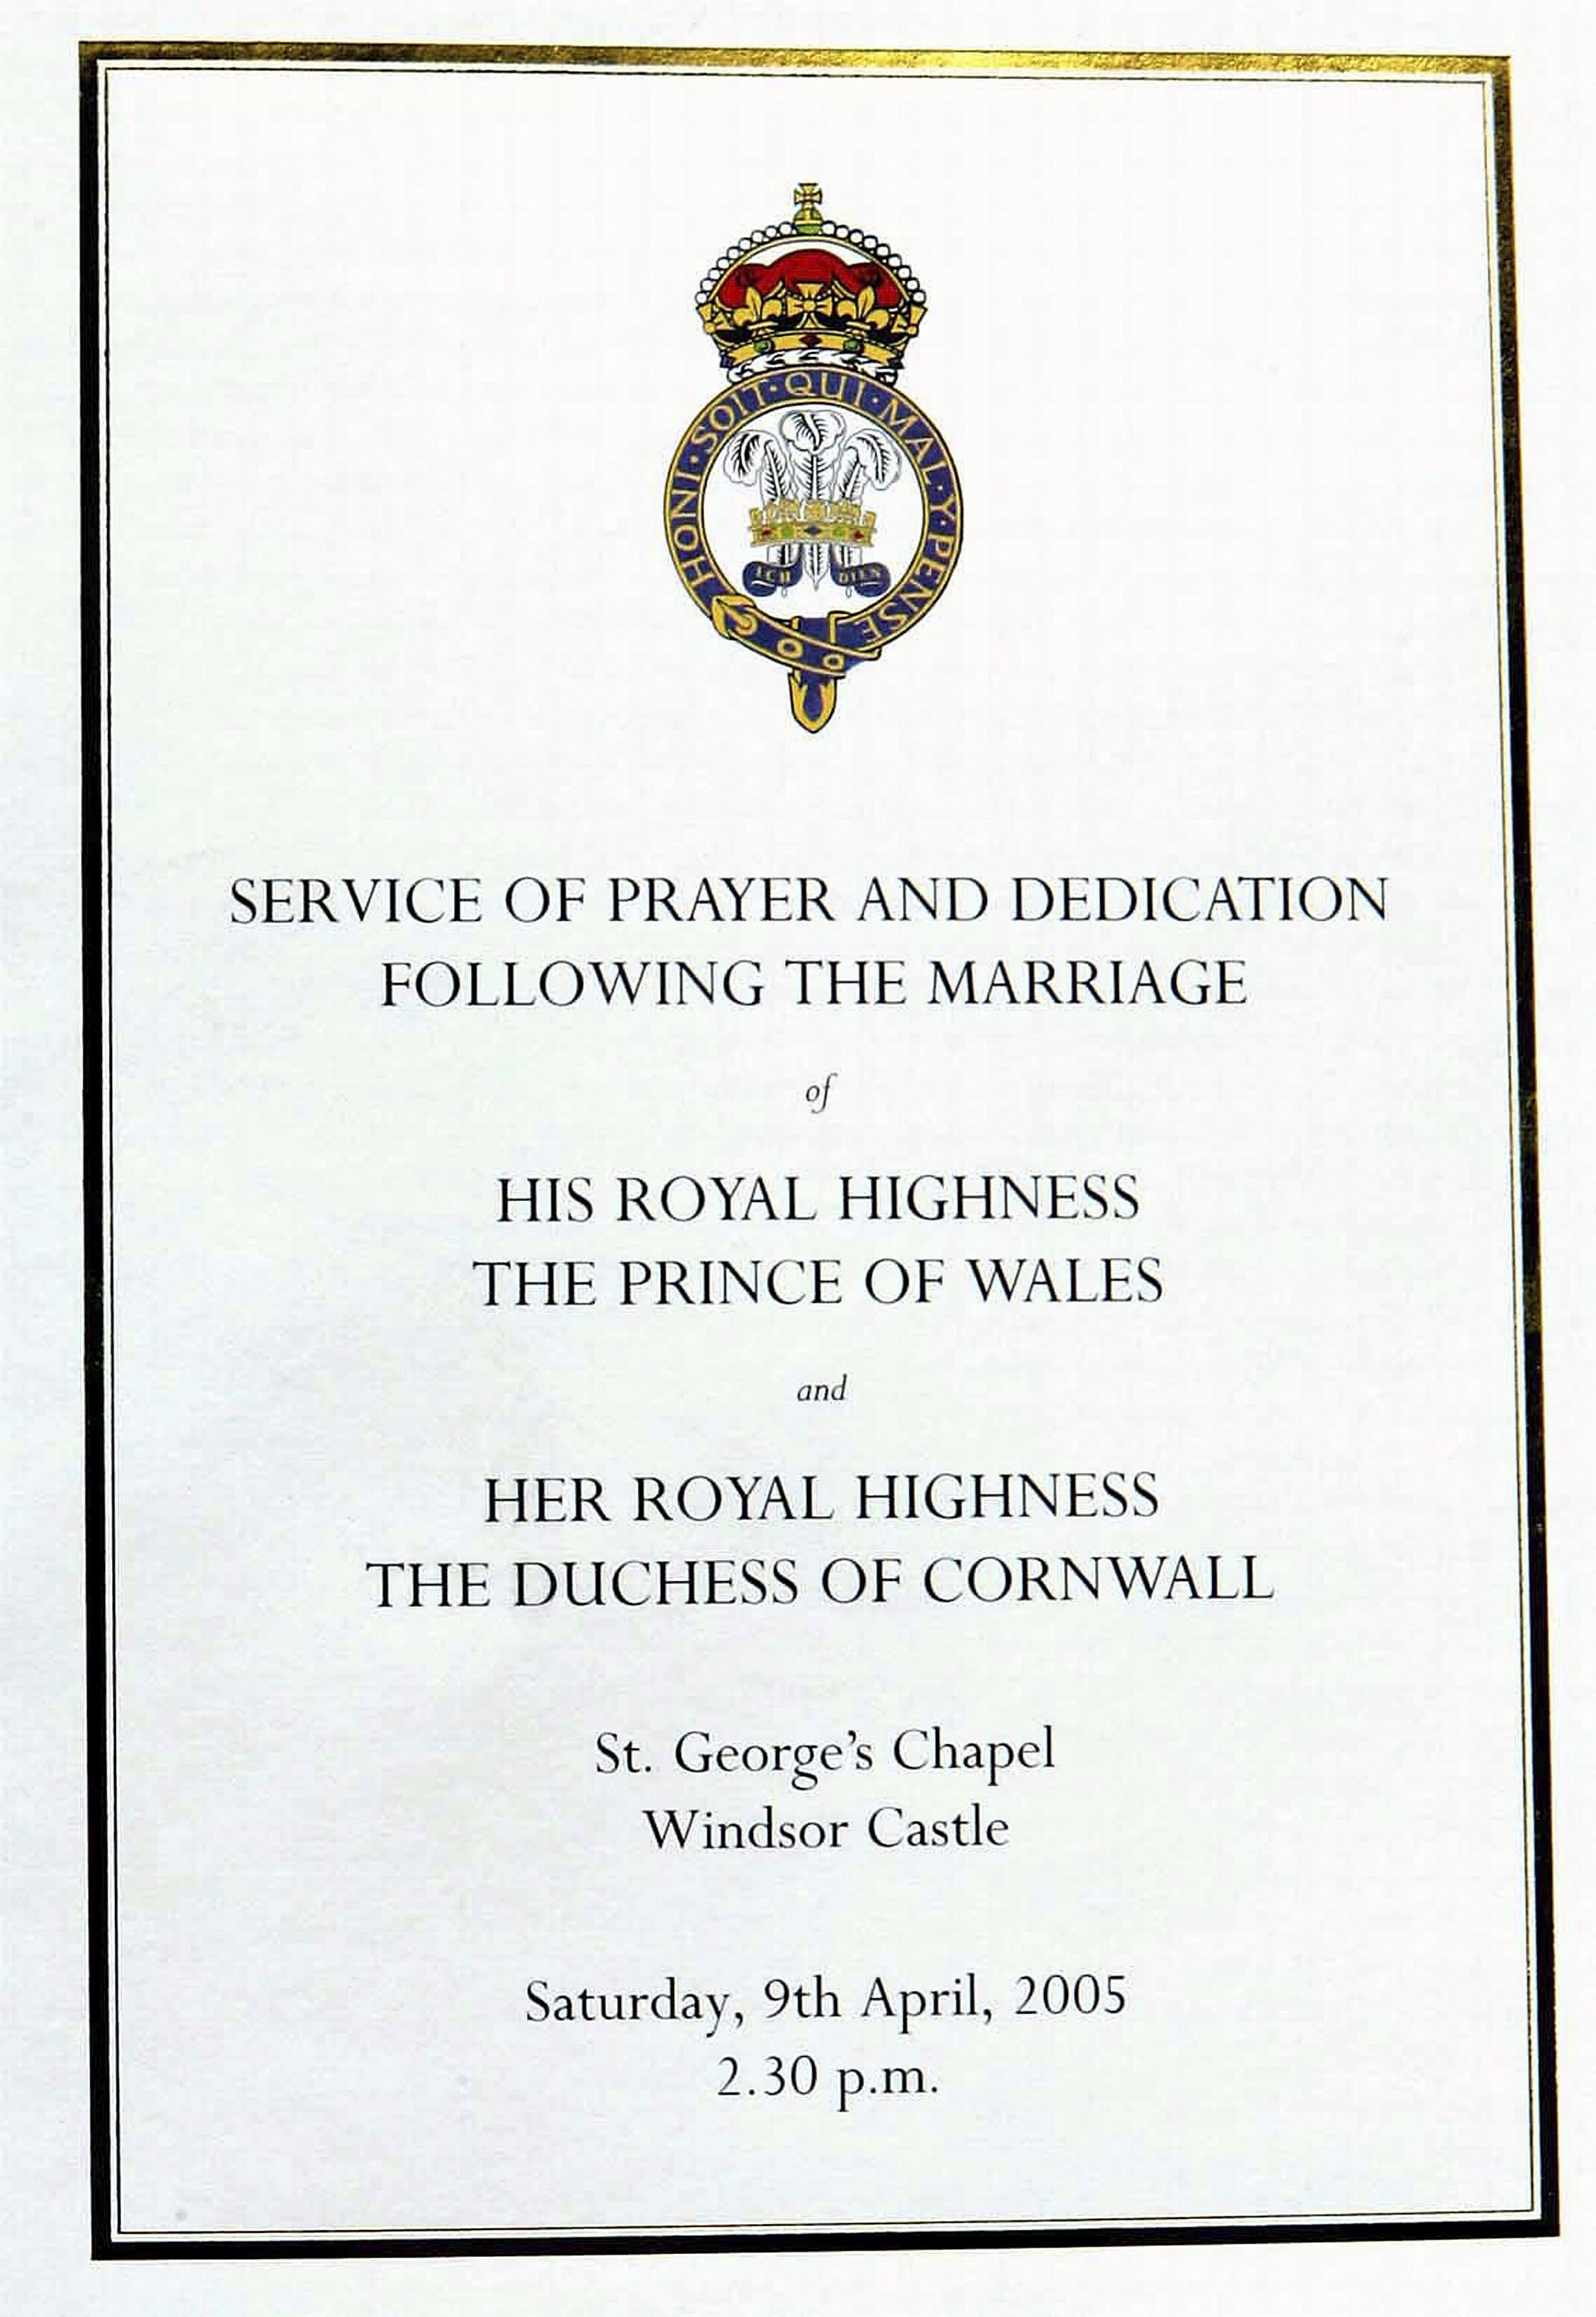 Das offizielle Programm für den Gebets- und Widmungs-Gottesdienst für Prinz Charles und Camillas Hochzeitssegen auf Schloss Windsor am 9. April 2005 in Berkshire, England | Quelle: Getty Images